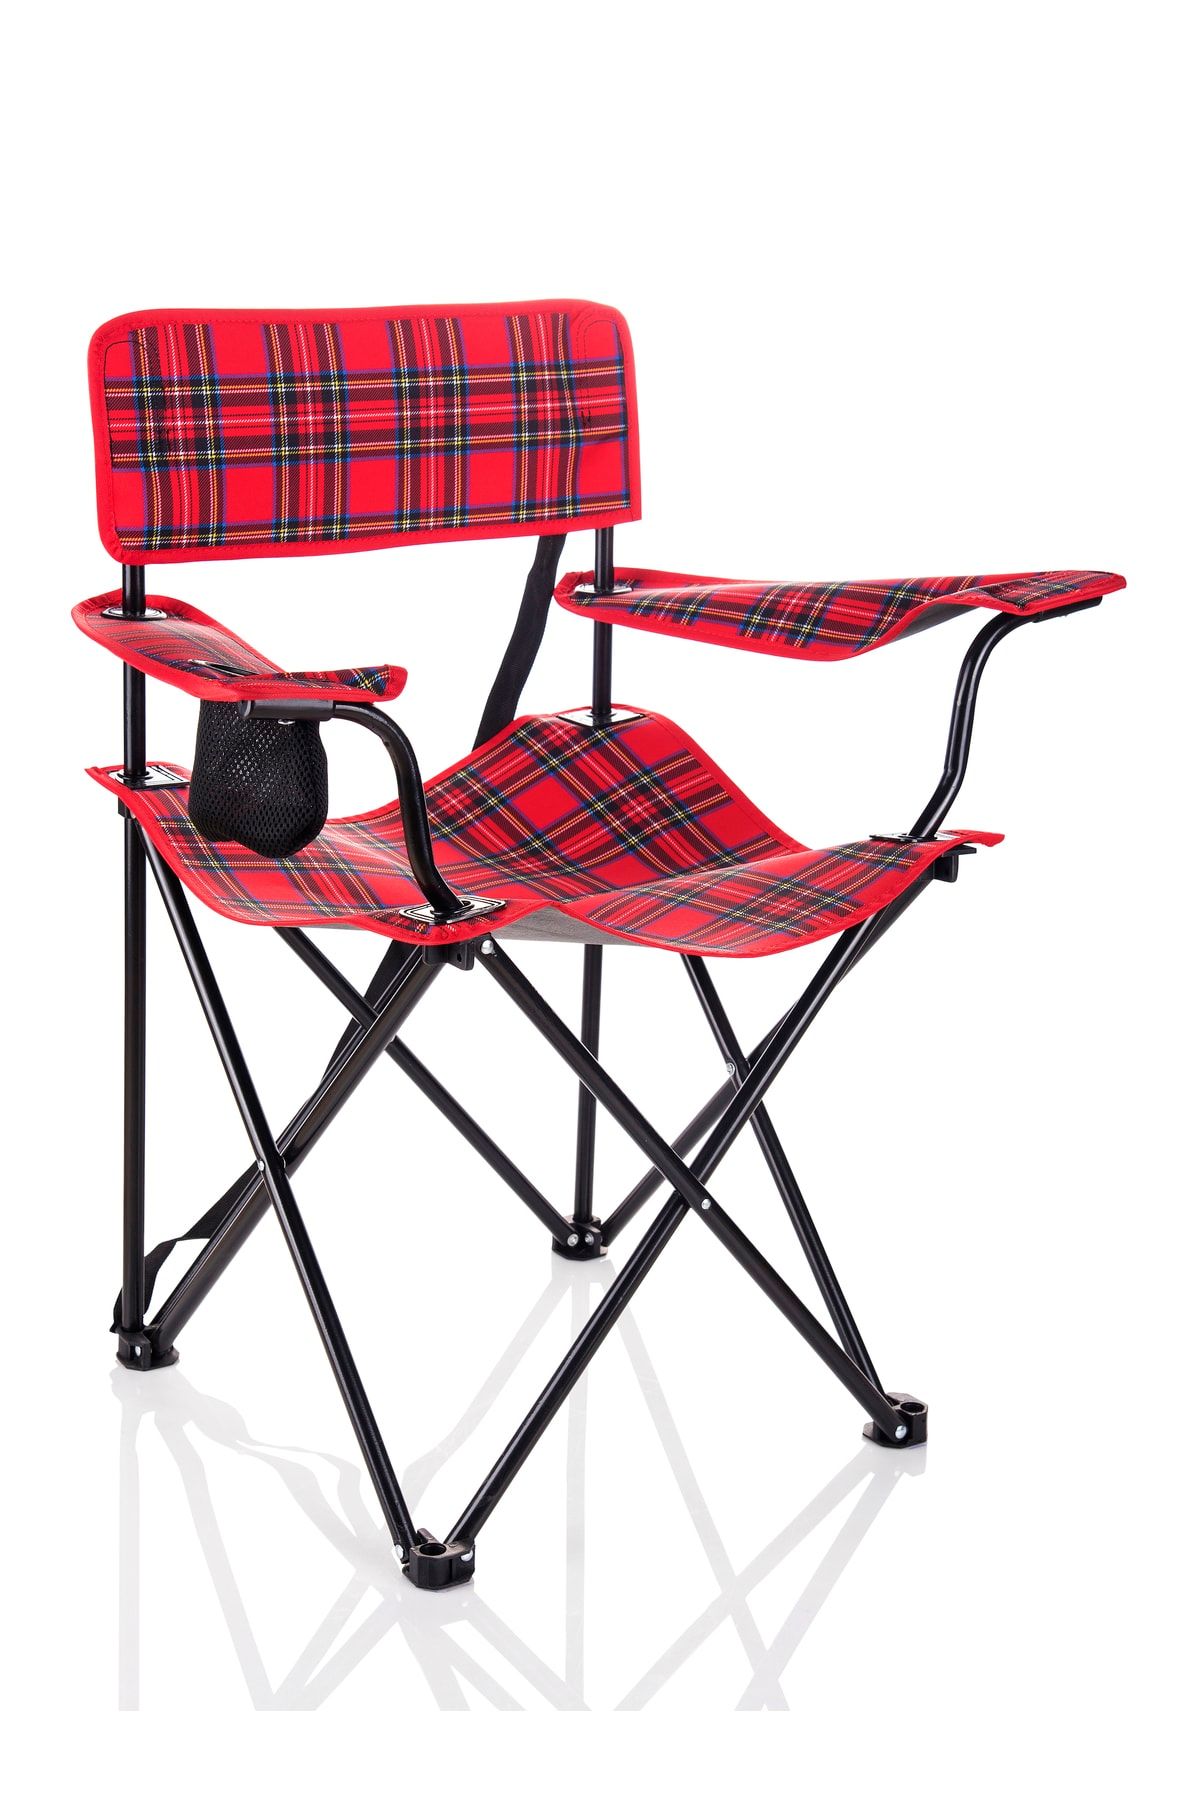 Miras Ekose Pro Kamp Sandalyesi , Kırmızı (2 YIL GARANTİ)